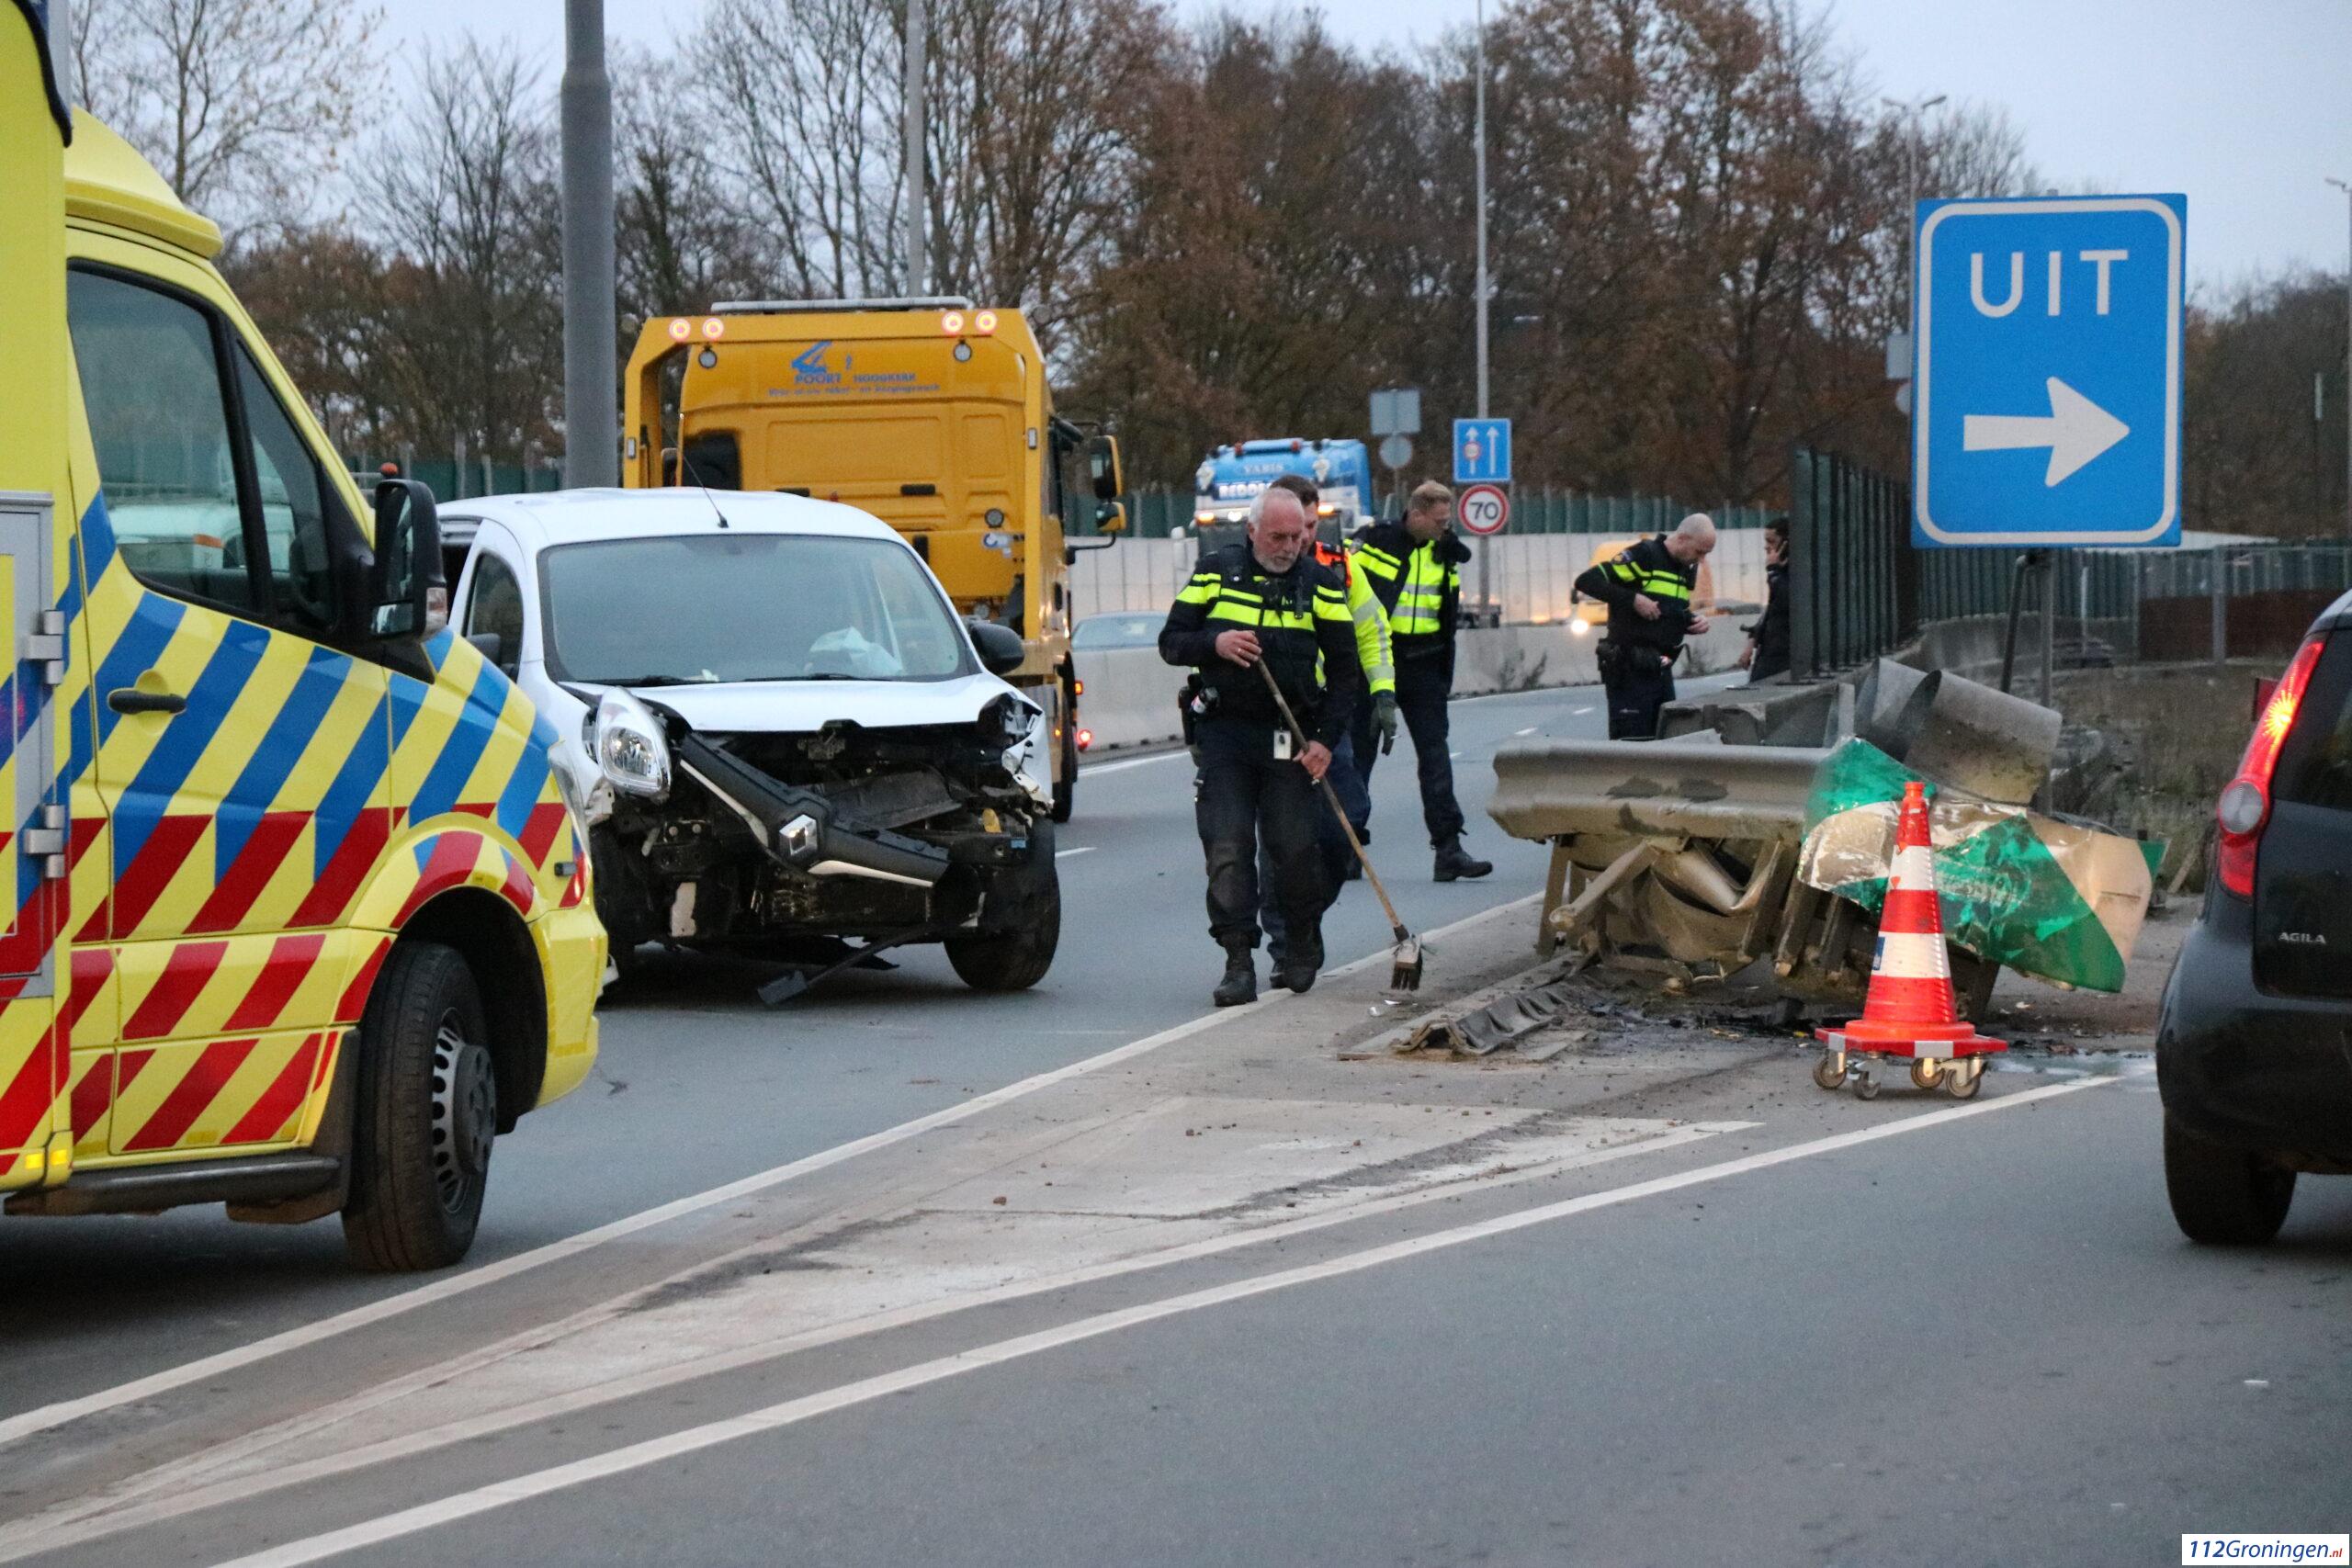 Lange file na fors ongeval nabij Julianaplein, twee gewonden.